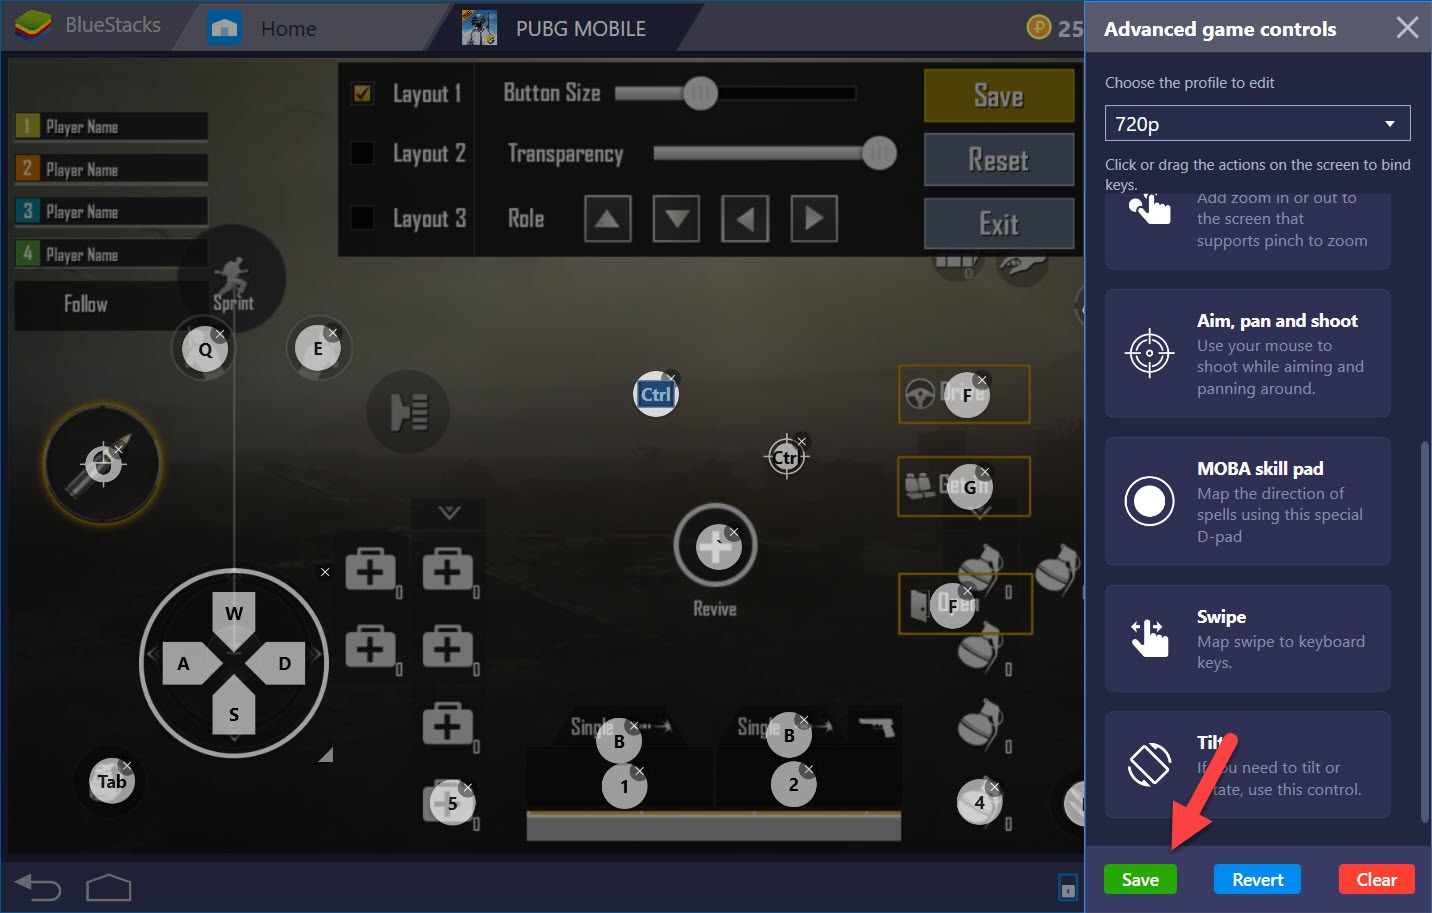 Hướng dẫn thiết lập Game controls khi chơi PUBG Mobile với BlueStacks 4